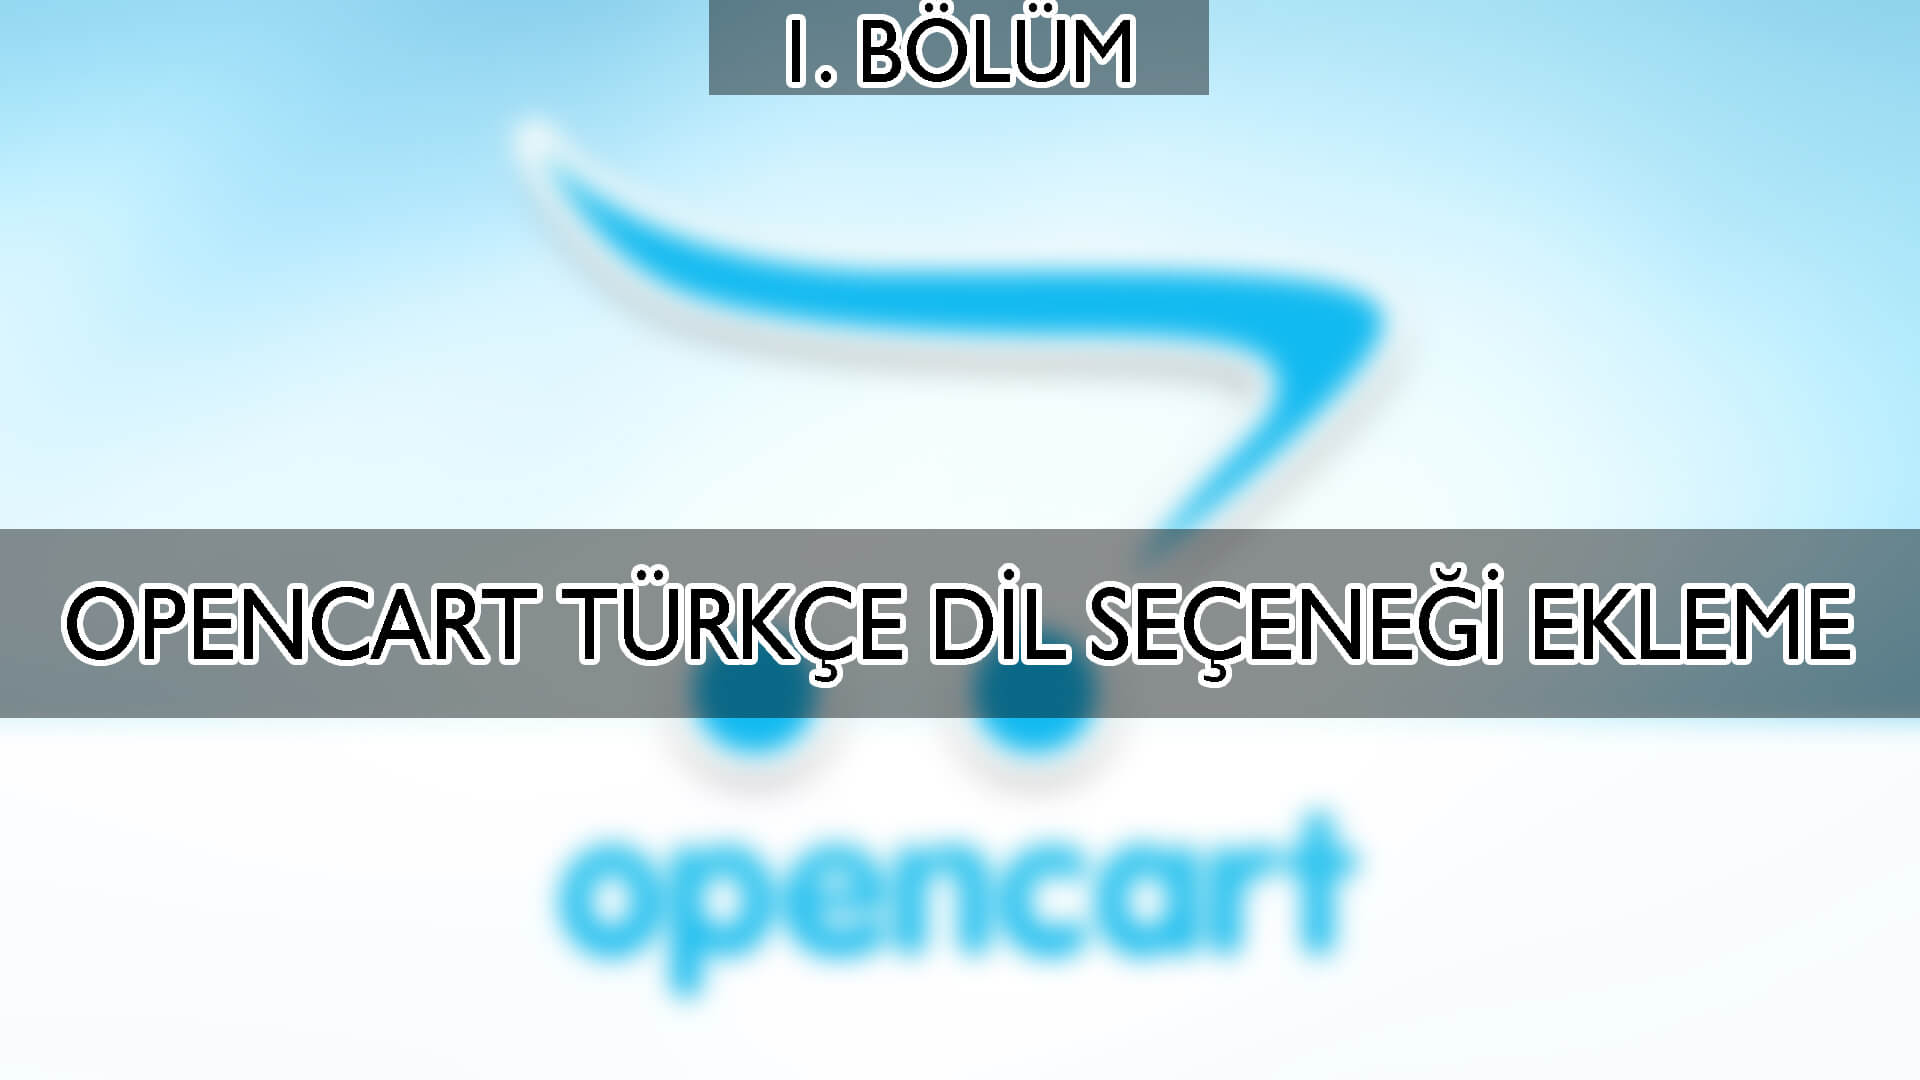 Opencart Türkçe Dil Seçeneği Nasıl Eklenir ?